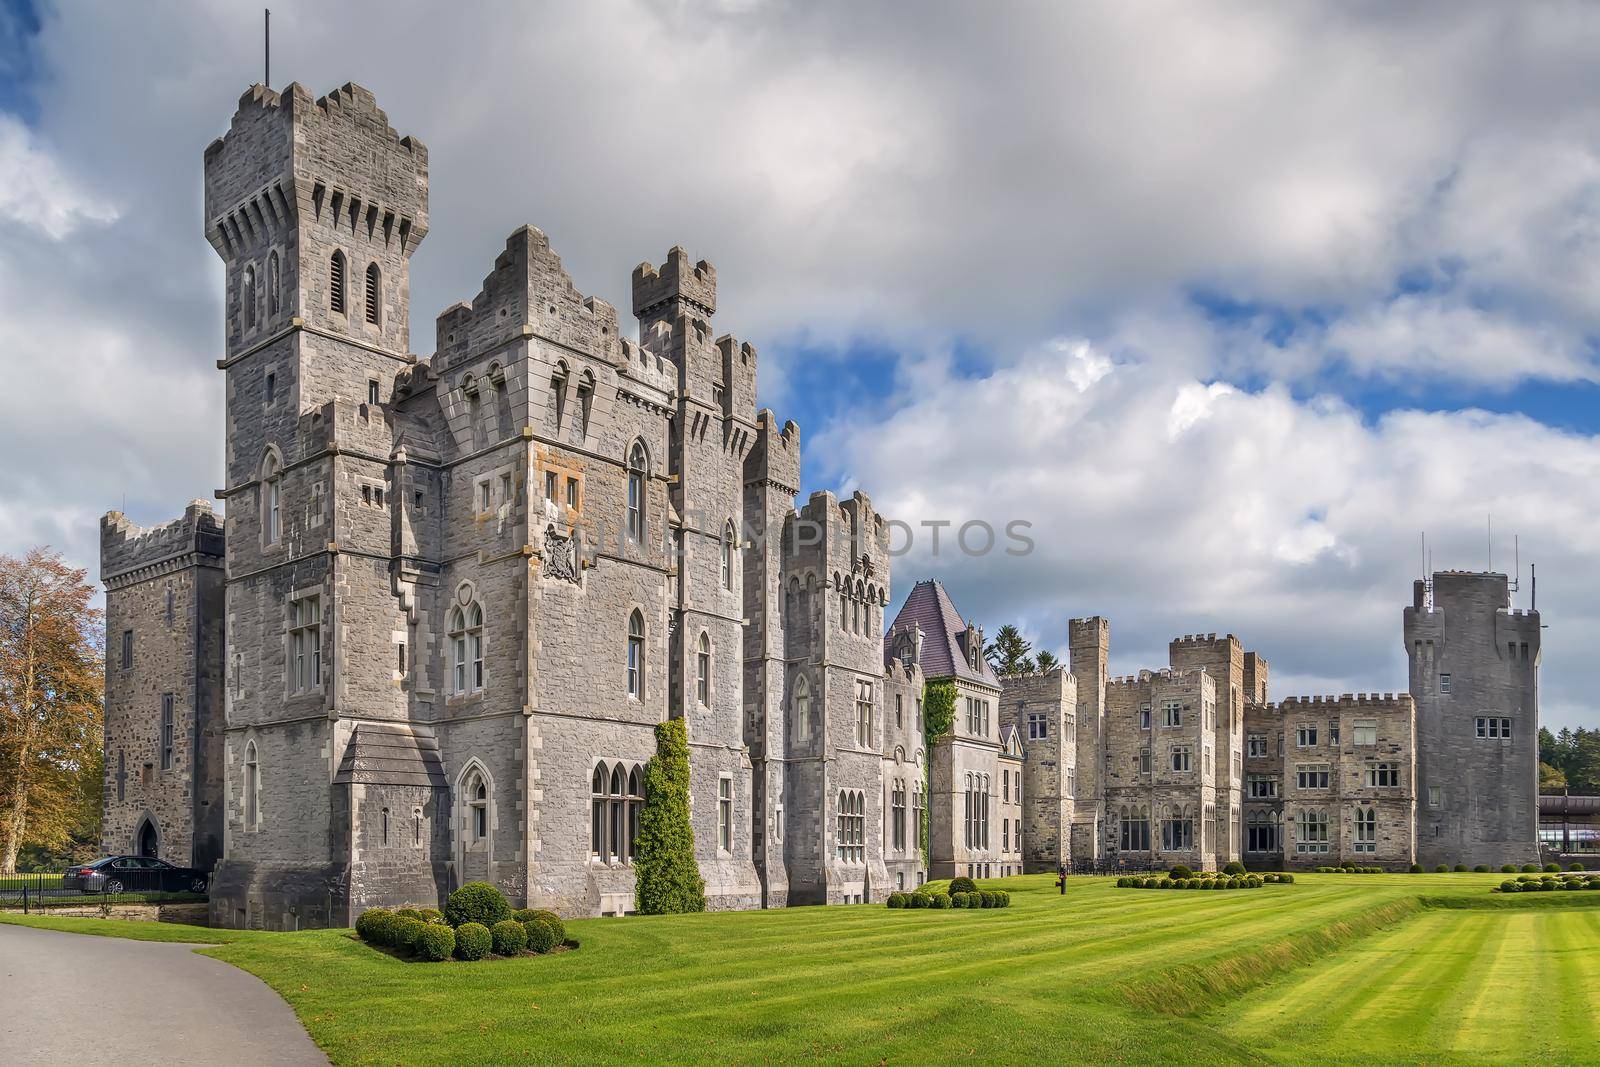 Ashford Castle, Ireland by borisb17